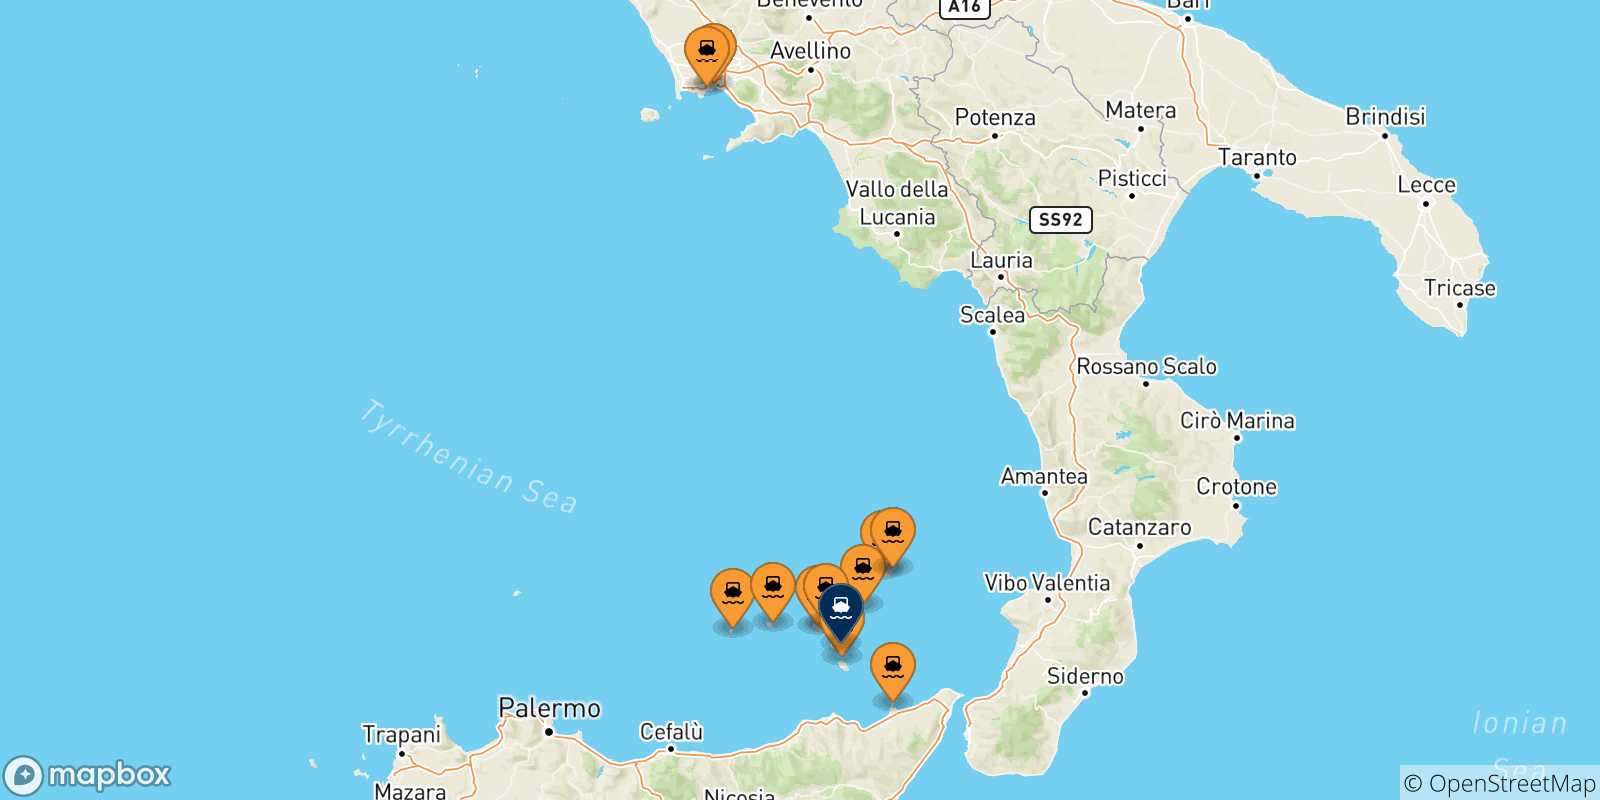 Mappa delle possibili rotte tra l'Italia e Lipari